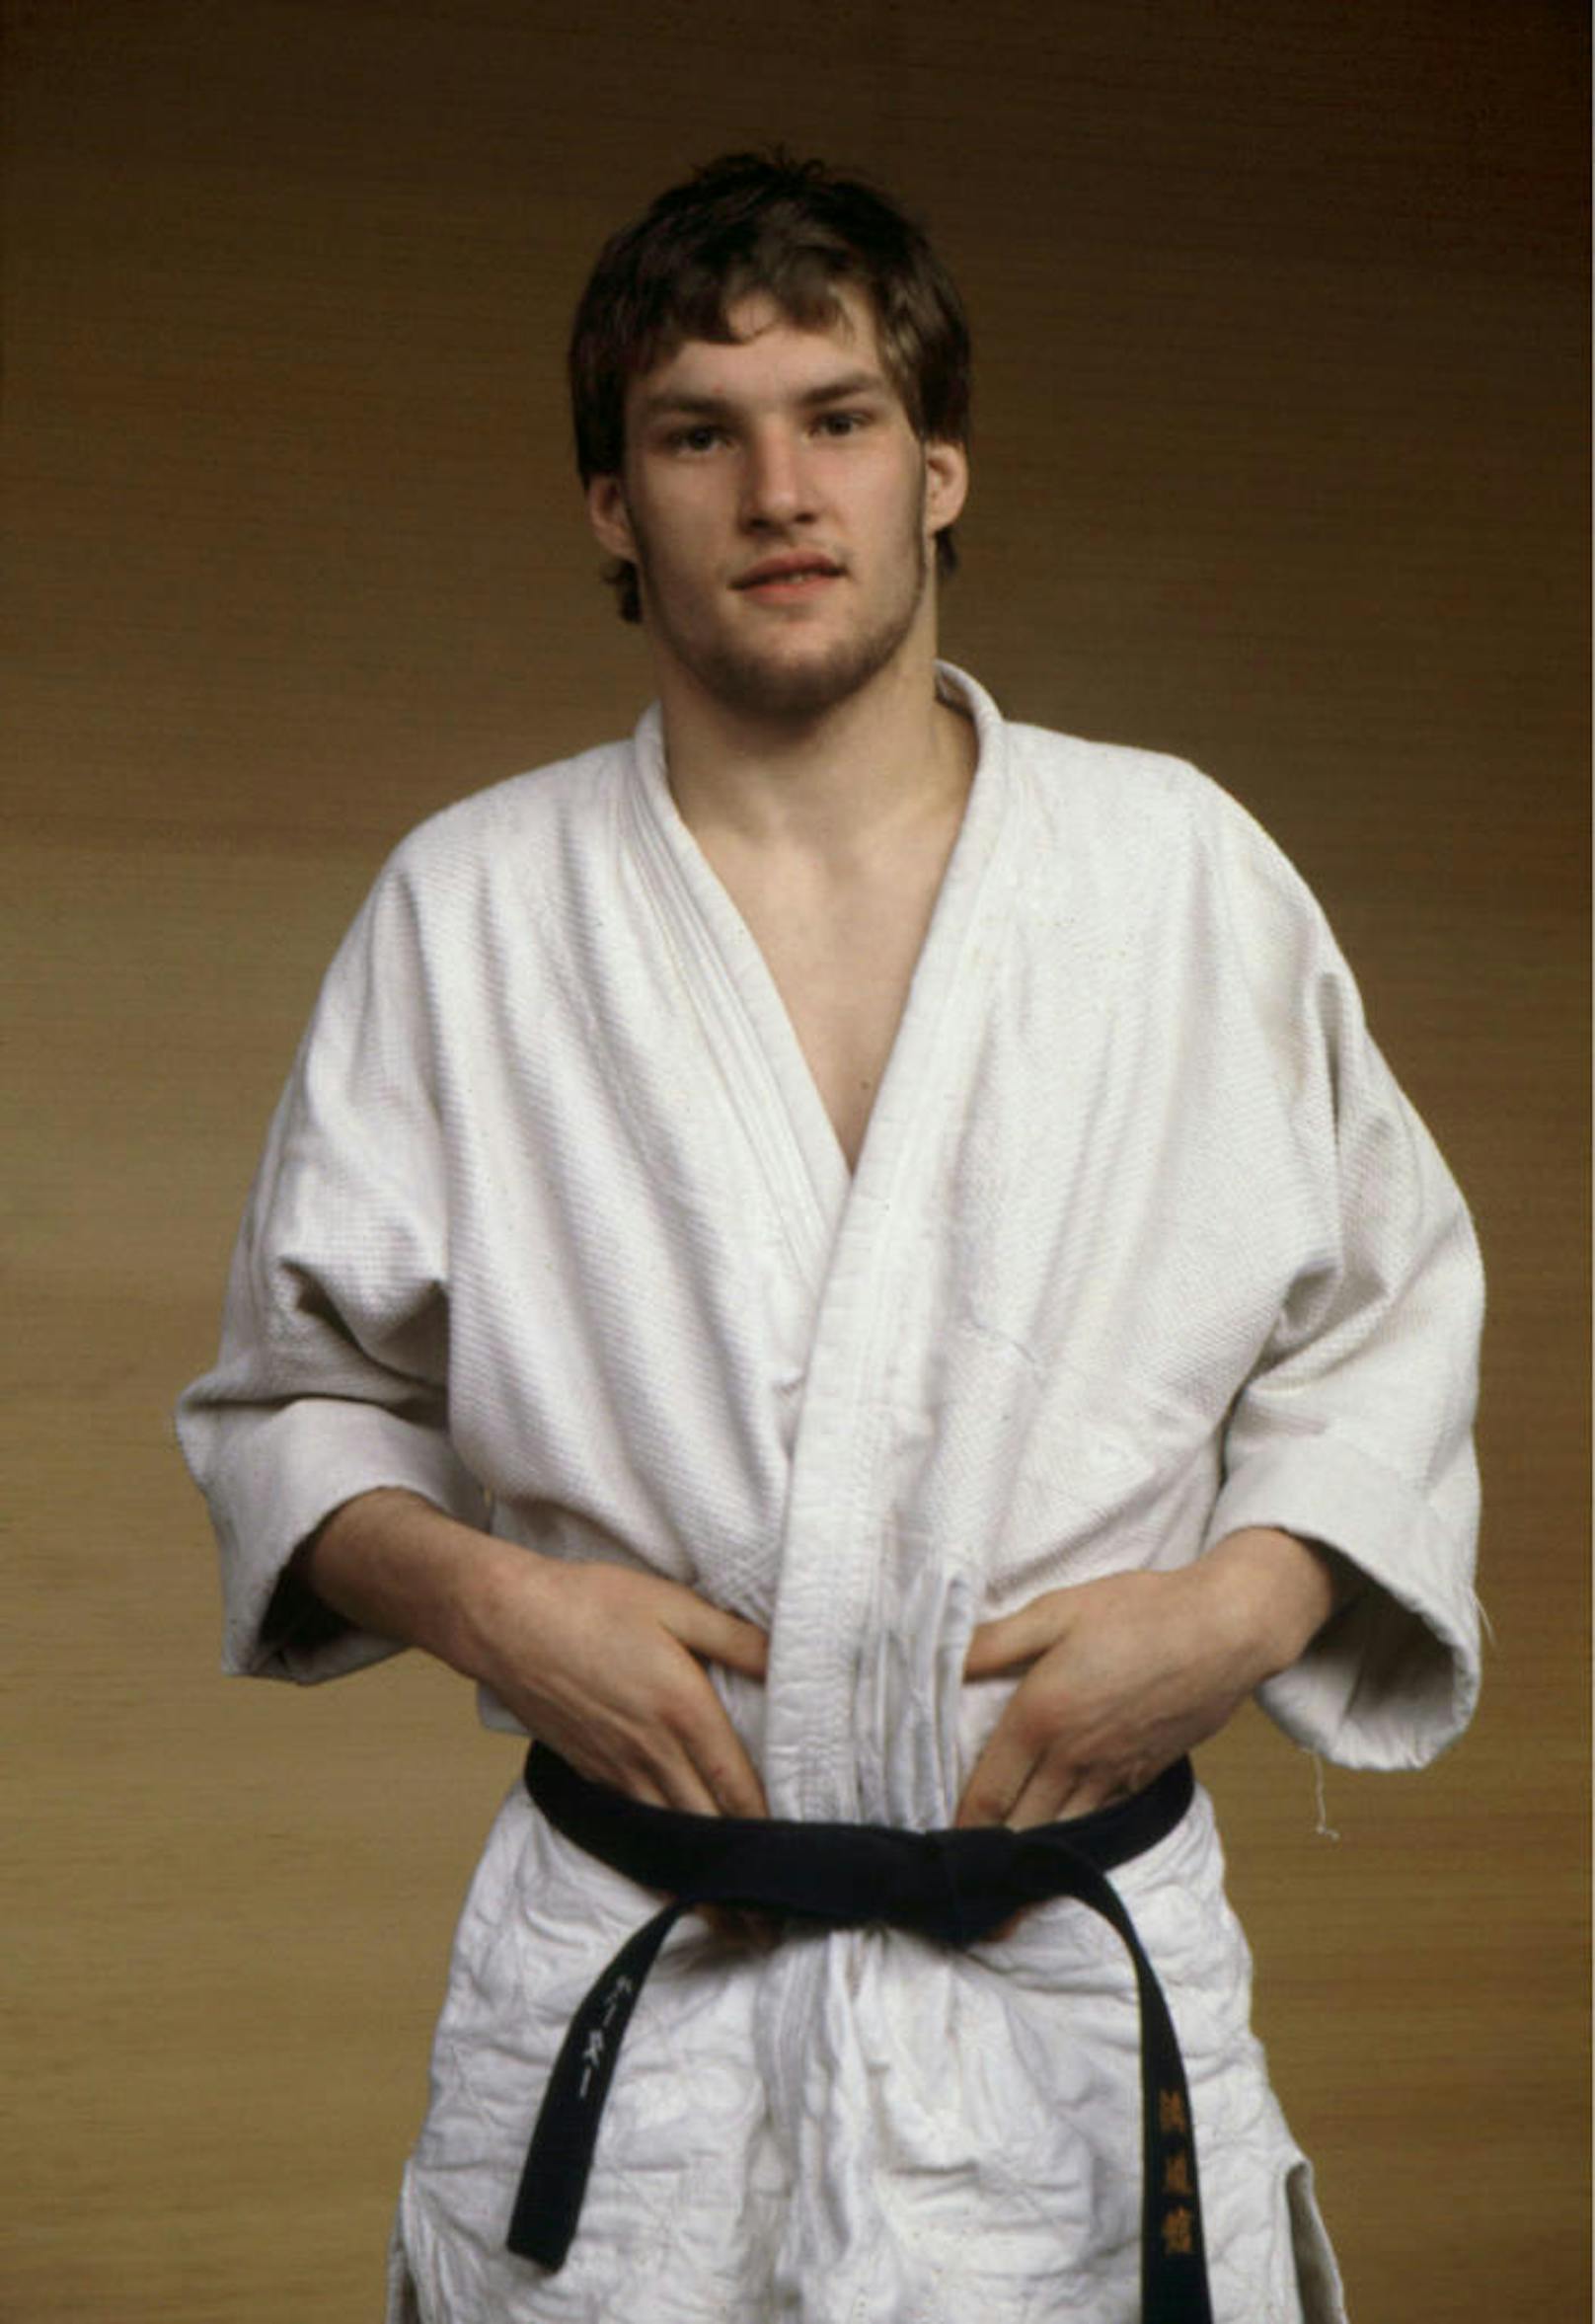 Peter Seisenbacher 1980 als 20-jähriger, aufstrebender Judoka. In diesem Jahr nimmt er in Moskau bei seinen ersten Olympischen Sommerspielen teil, belegt Rang 19.

Bei der Heim-EM in seiner Geburtsstadt Wien holt der junge Sportler Silber.

Der gelernte Goldschmied hatte damit noch nicht genug...